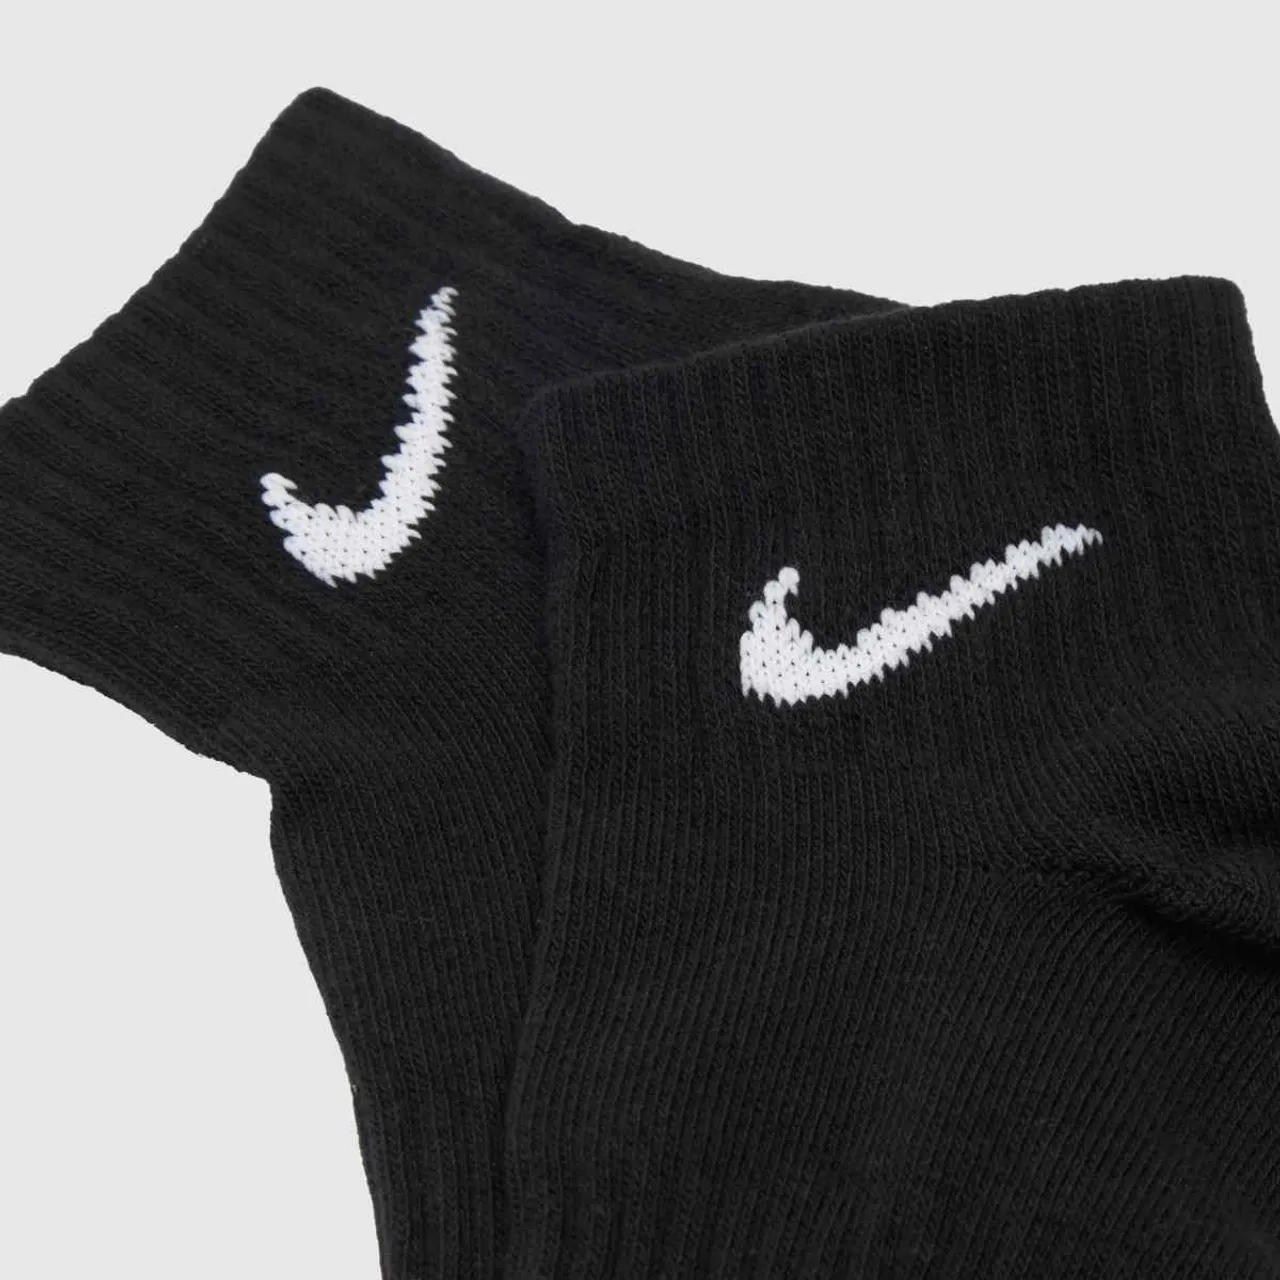 Nike Black & White Ankle Socks 3 Pack